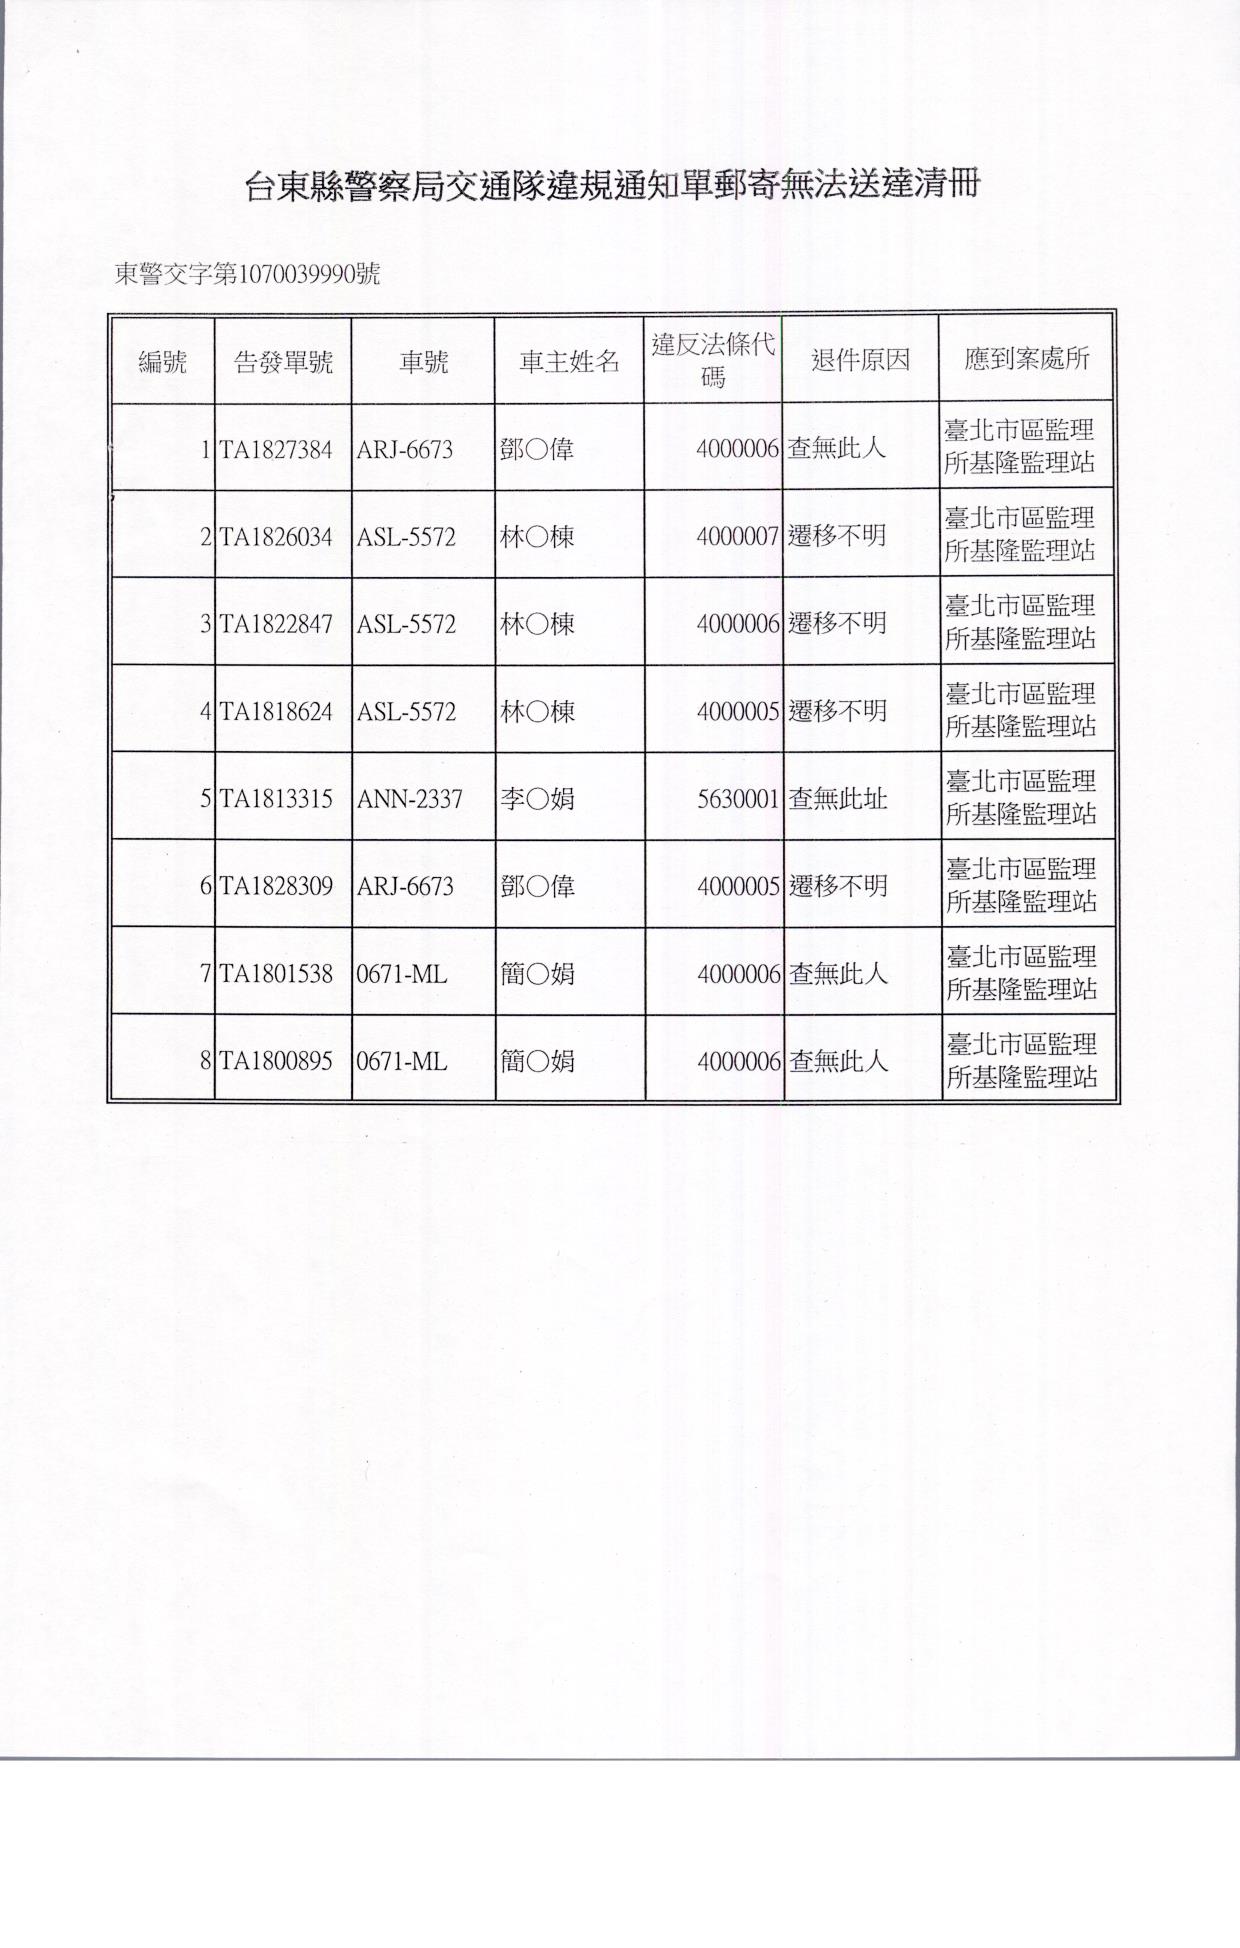 公告本局舉發鄧o偉等8名違反道路交通管理事件公示送達案